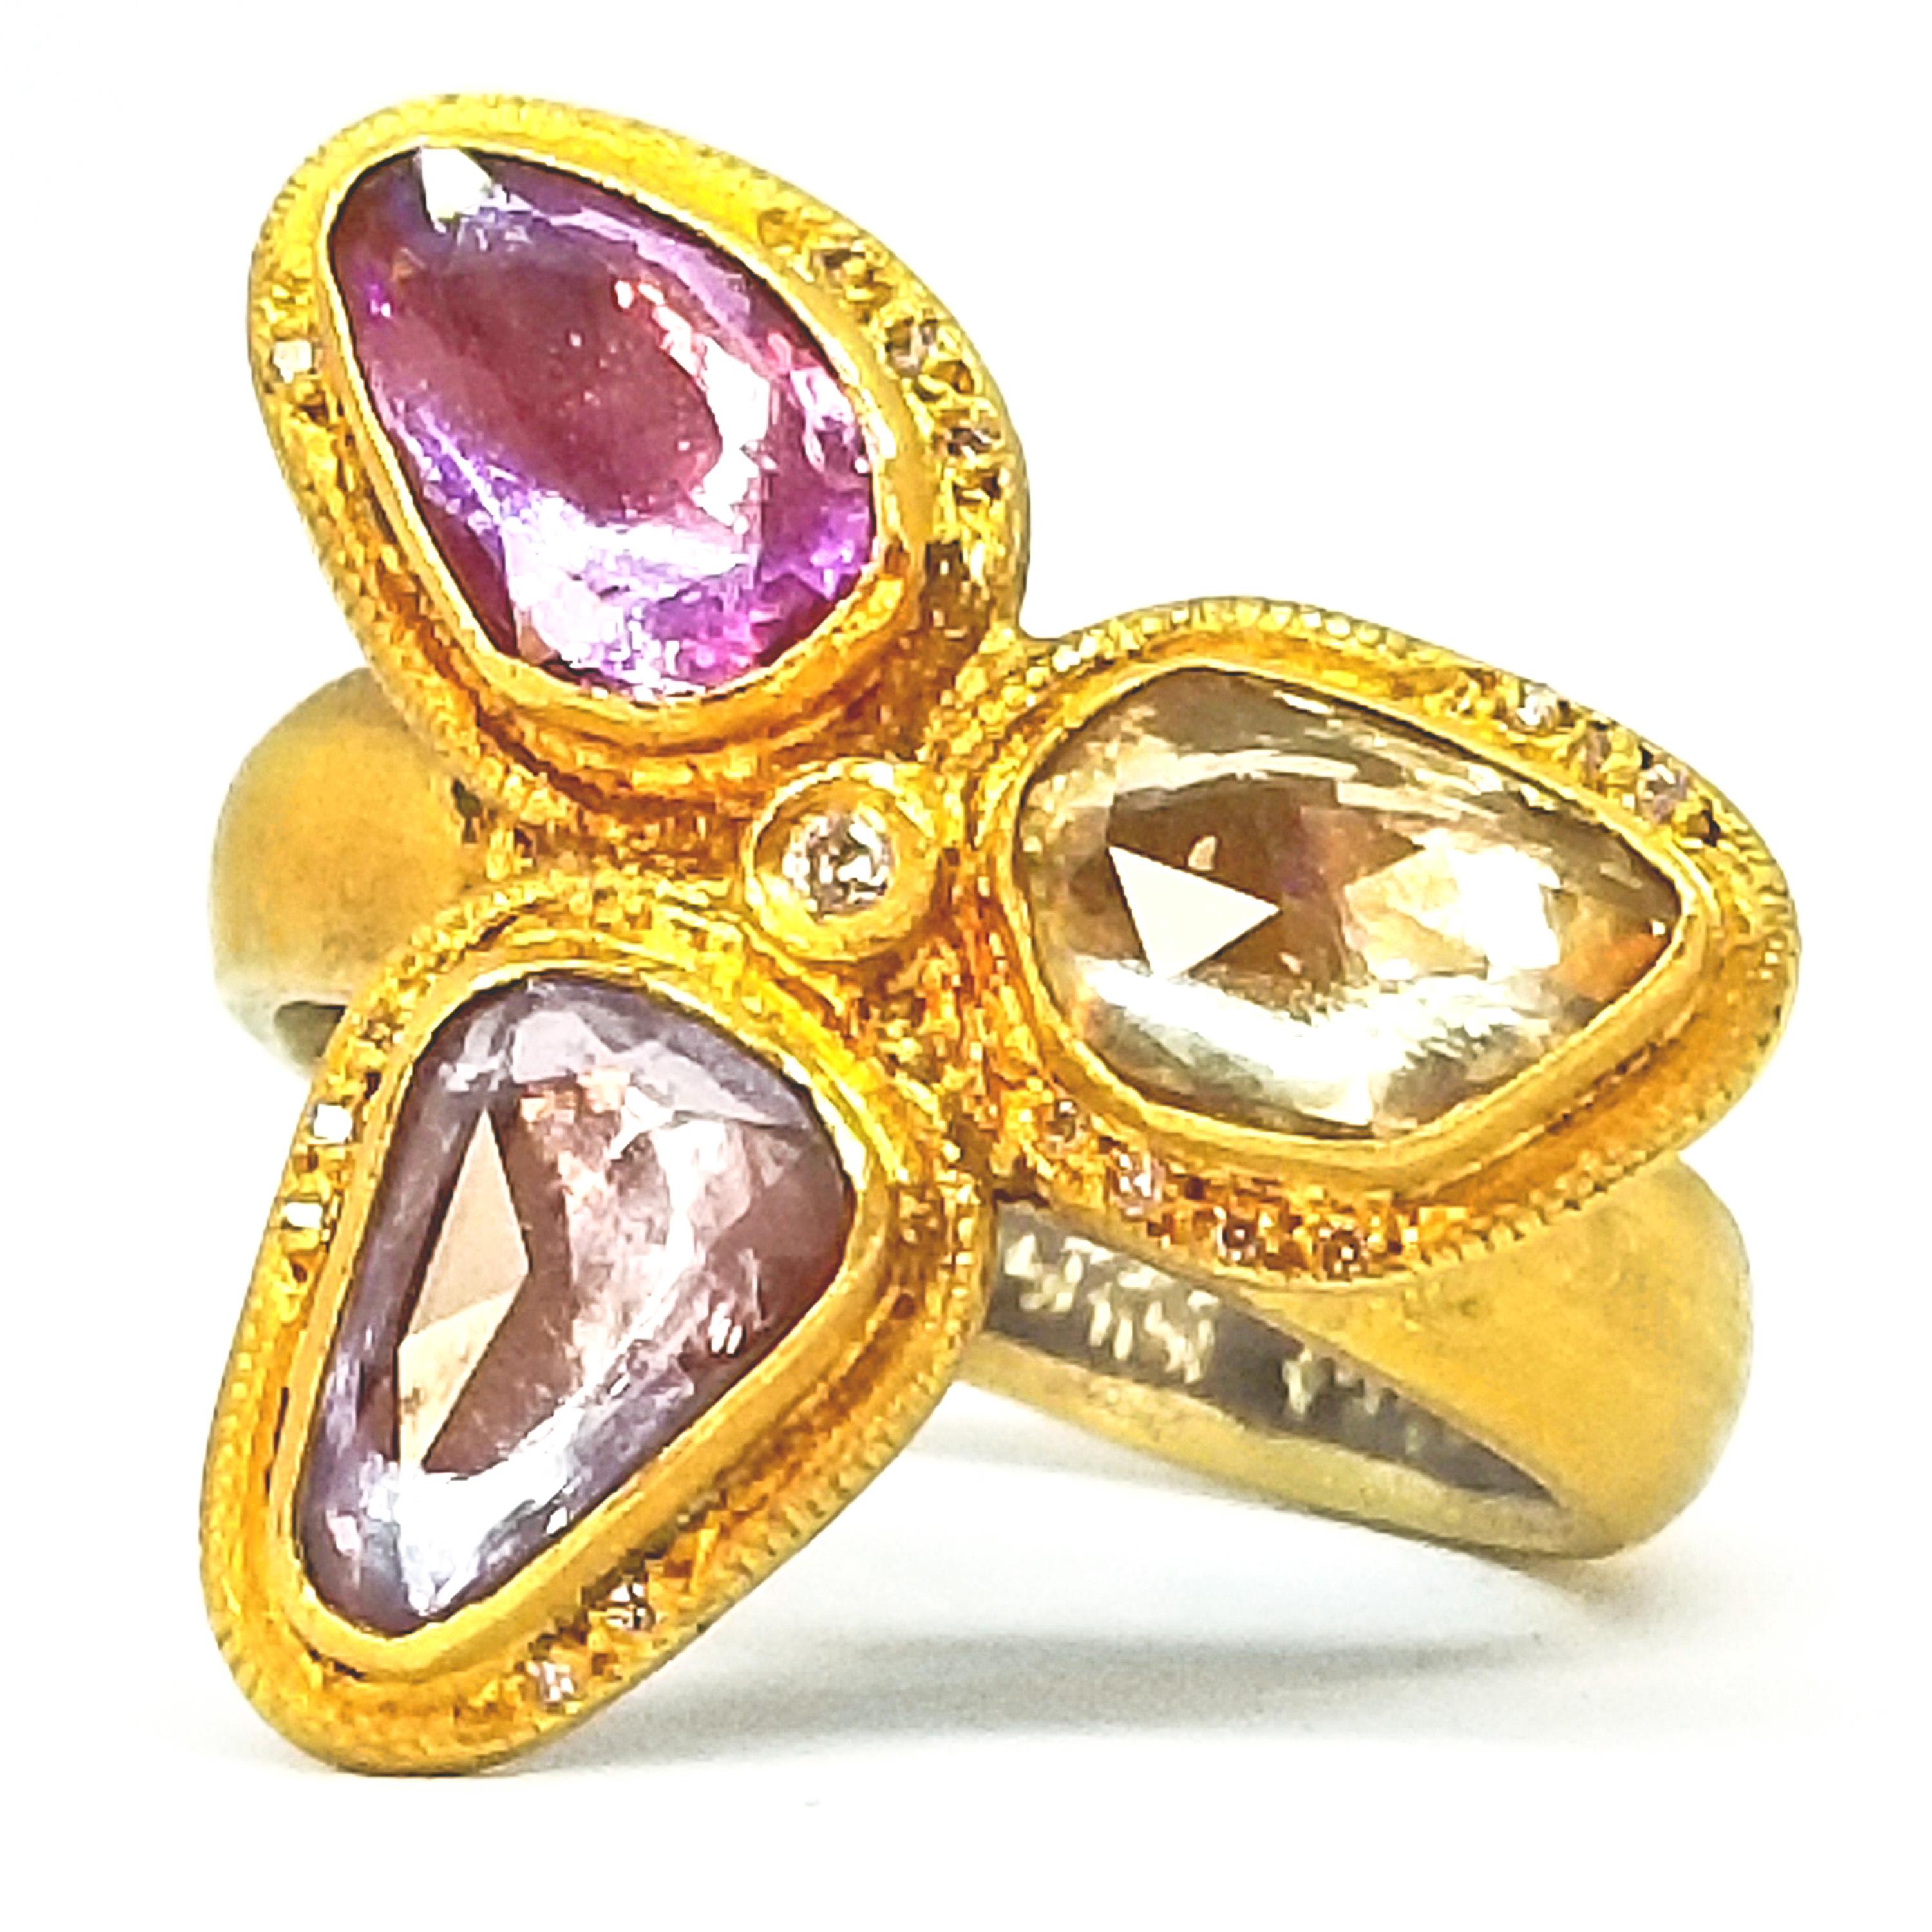 Kurtulan Handgefertigter 2,72 Karat Rosenschliff Saphire Diamant Floret Ring Signiert 24K